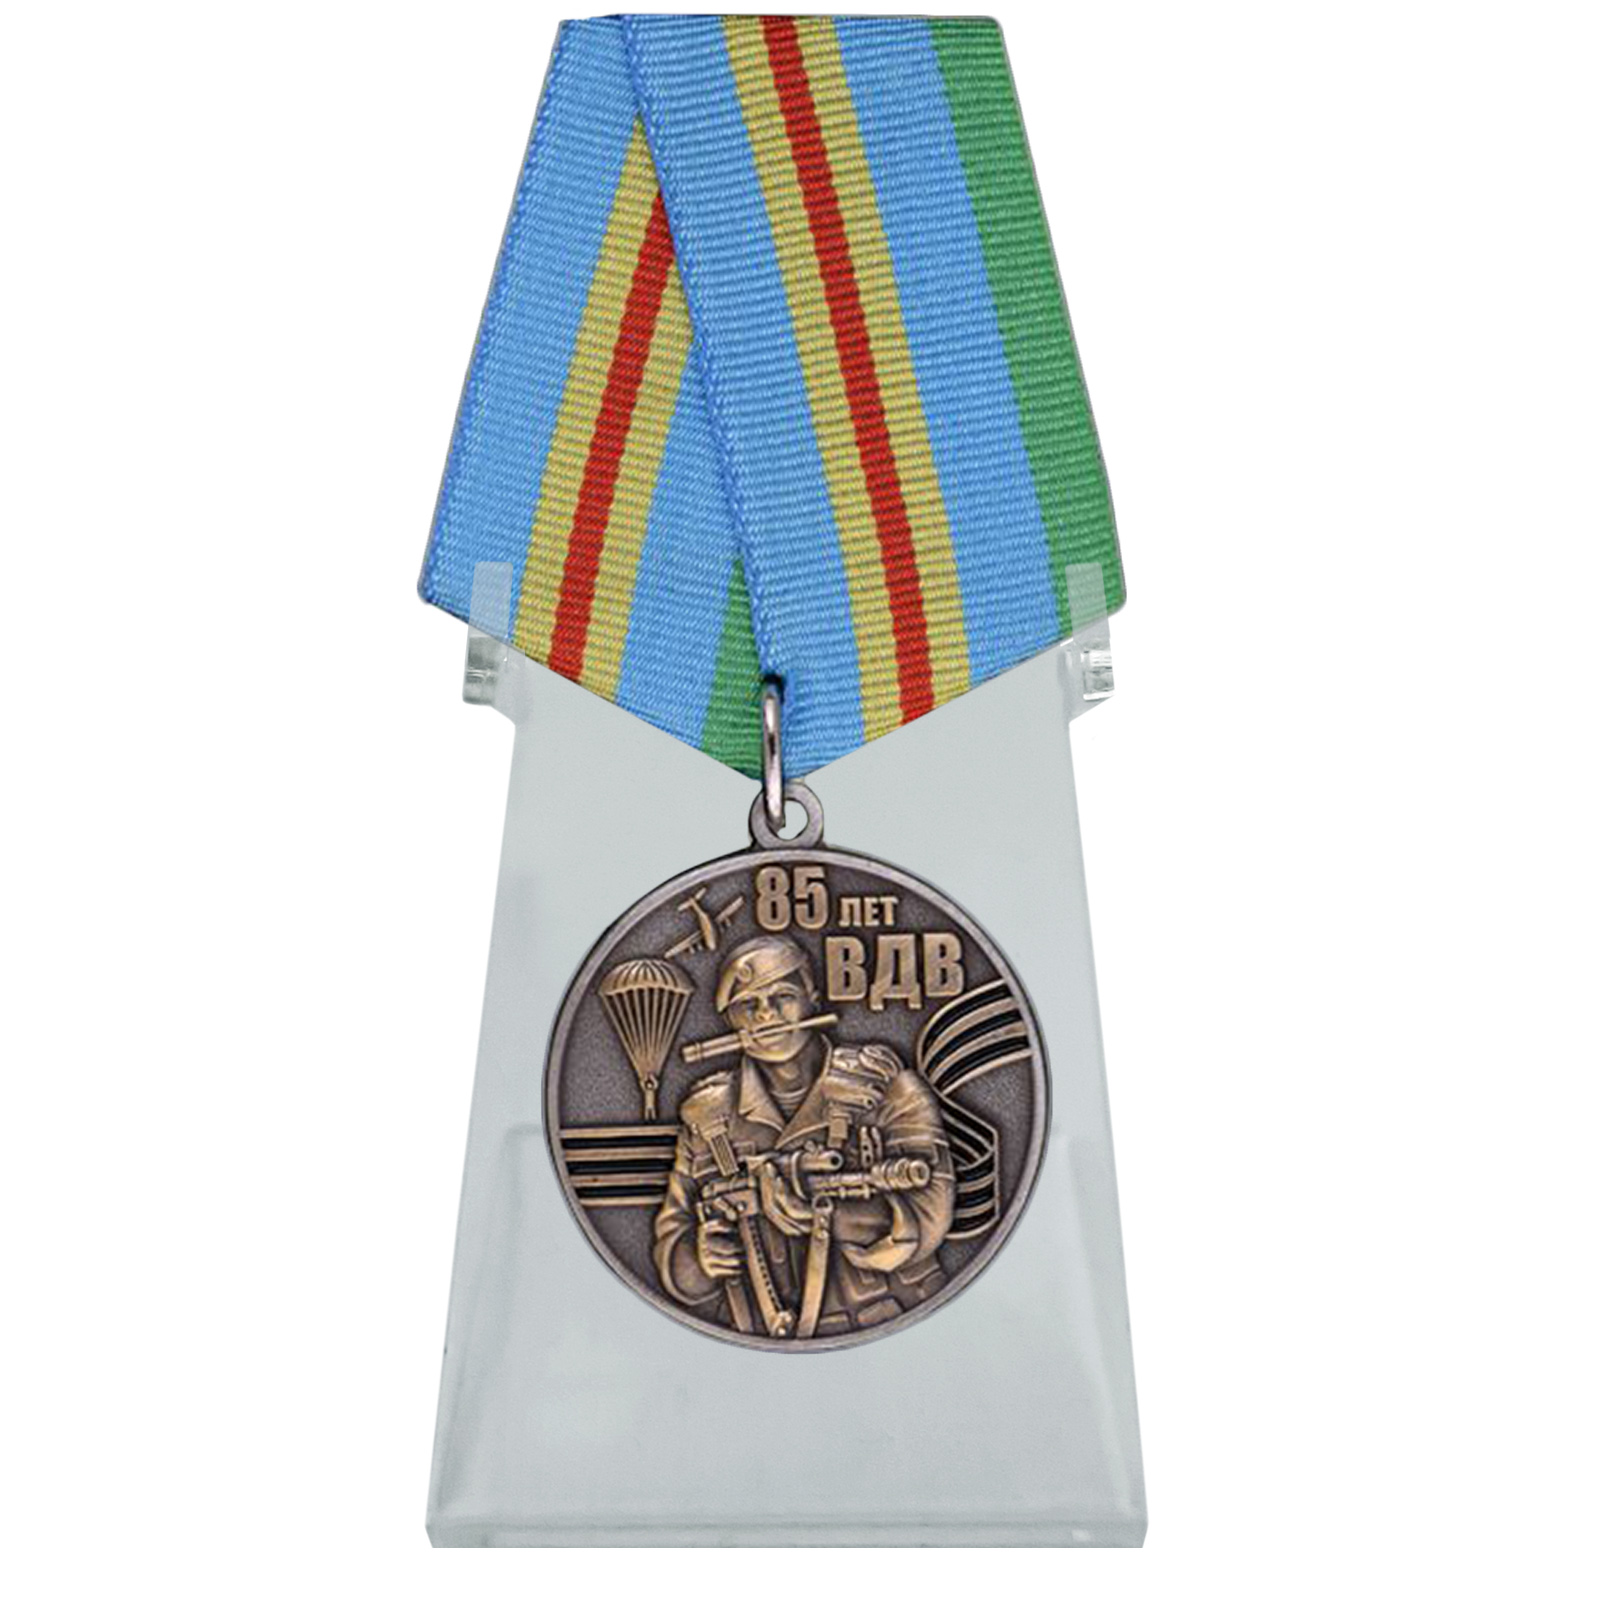 Купить медаль ВДВ для лучших представителей воздушного десанта на подставке в подарок